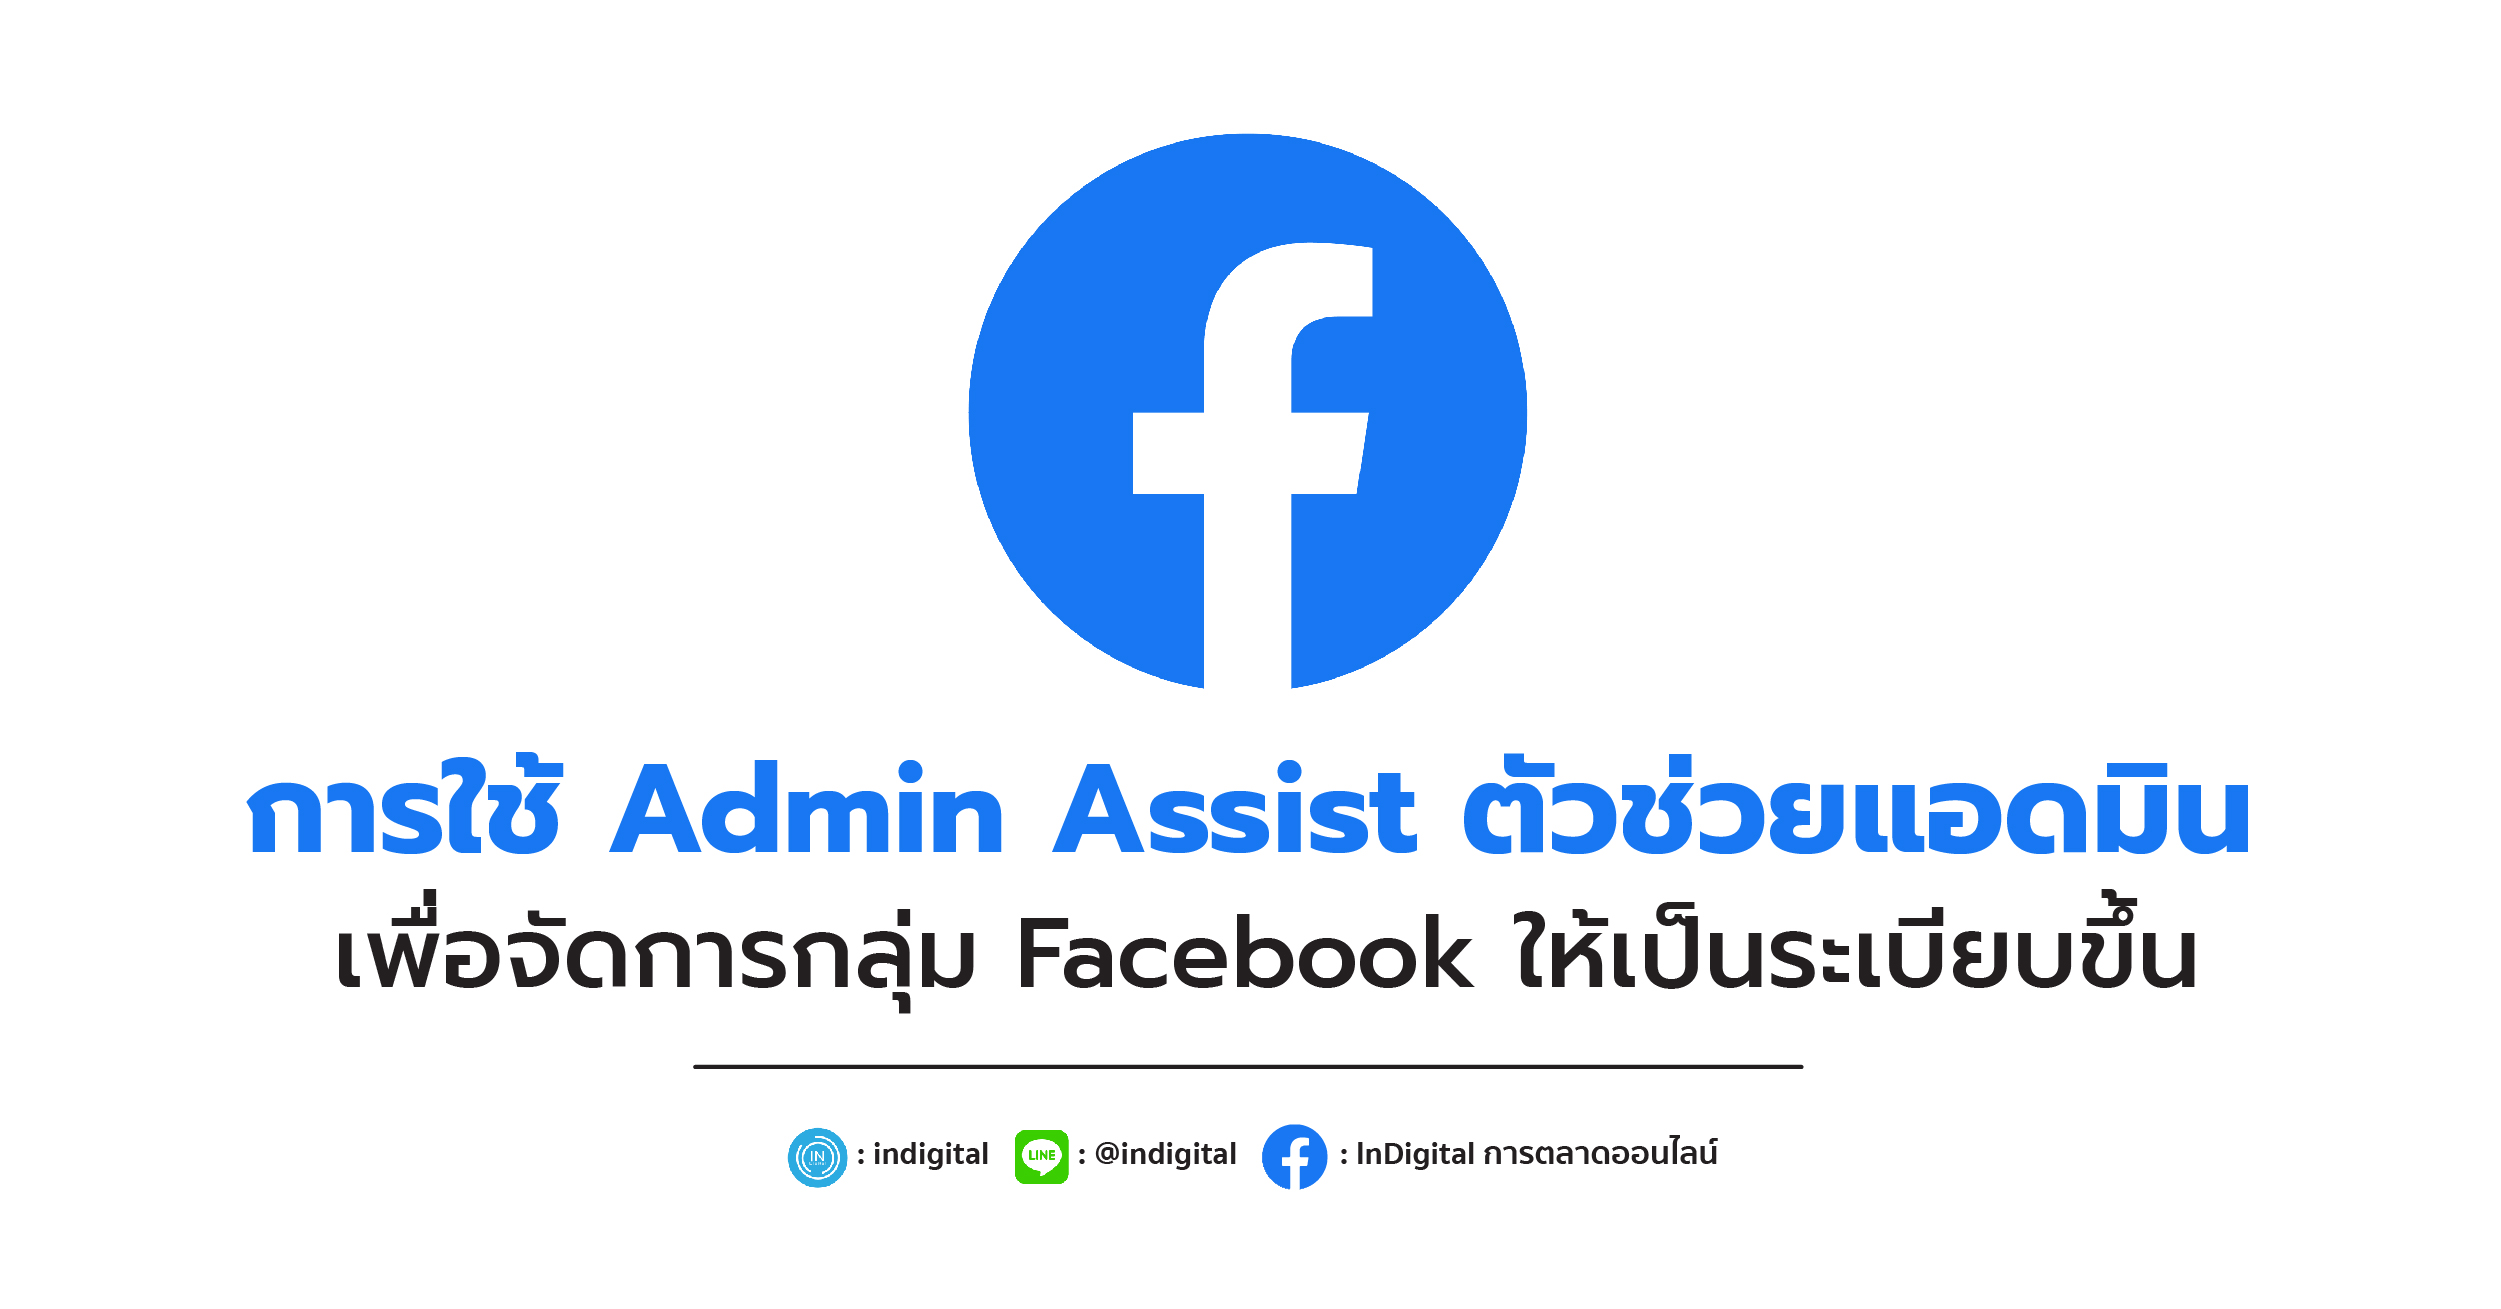 การใช้ Admin Assist ตัวช่วยแอดมิน เพื่อจัดการกลุ่ม Facebook ให้เป็นระเบียบขึ้น